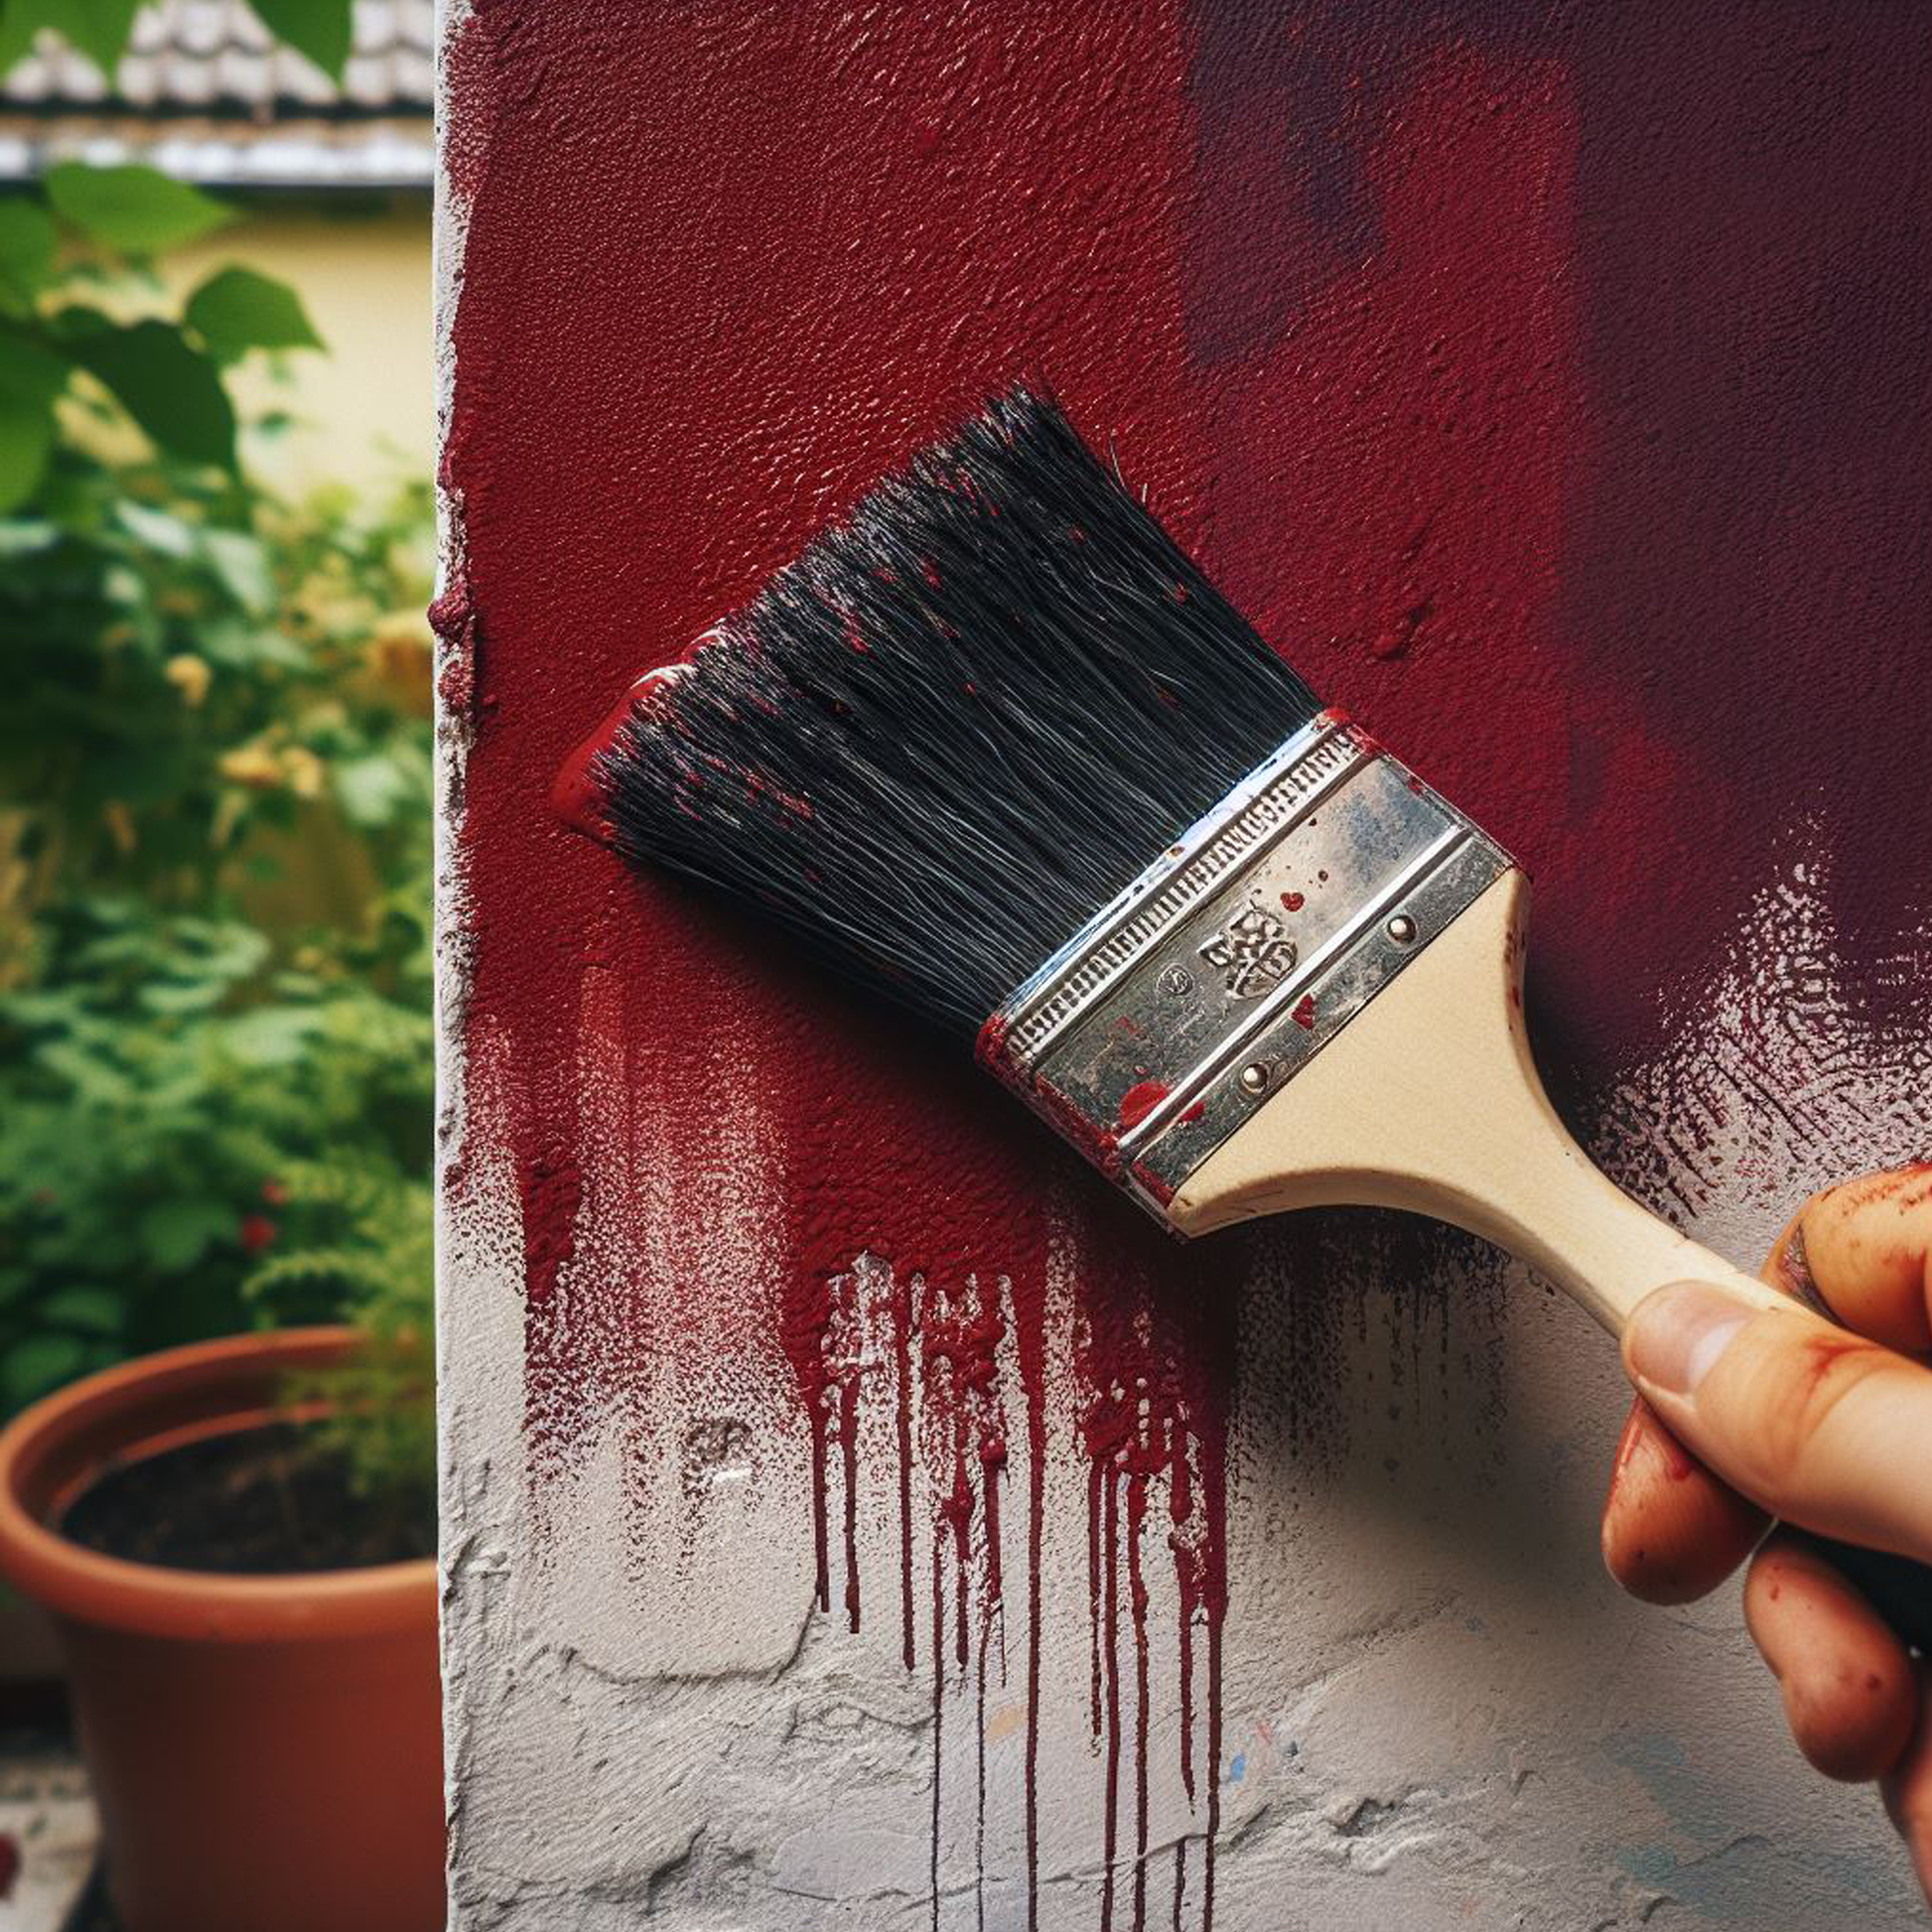 classic burgundy paint brush